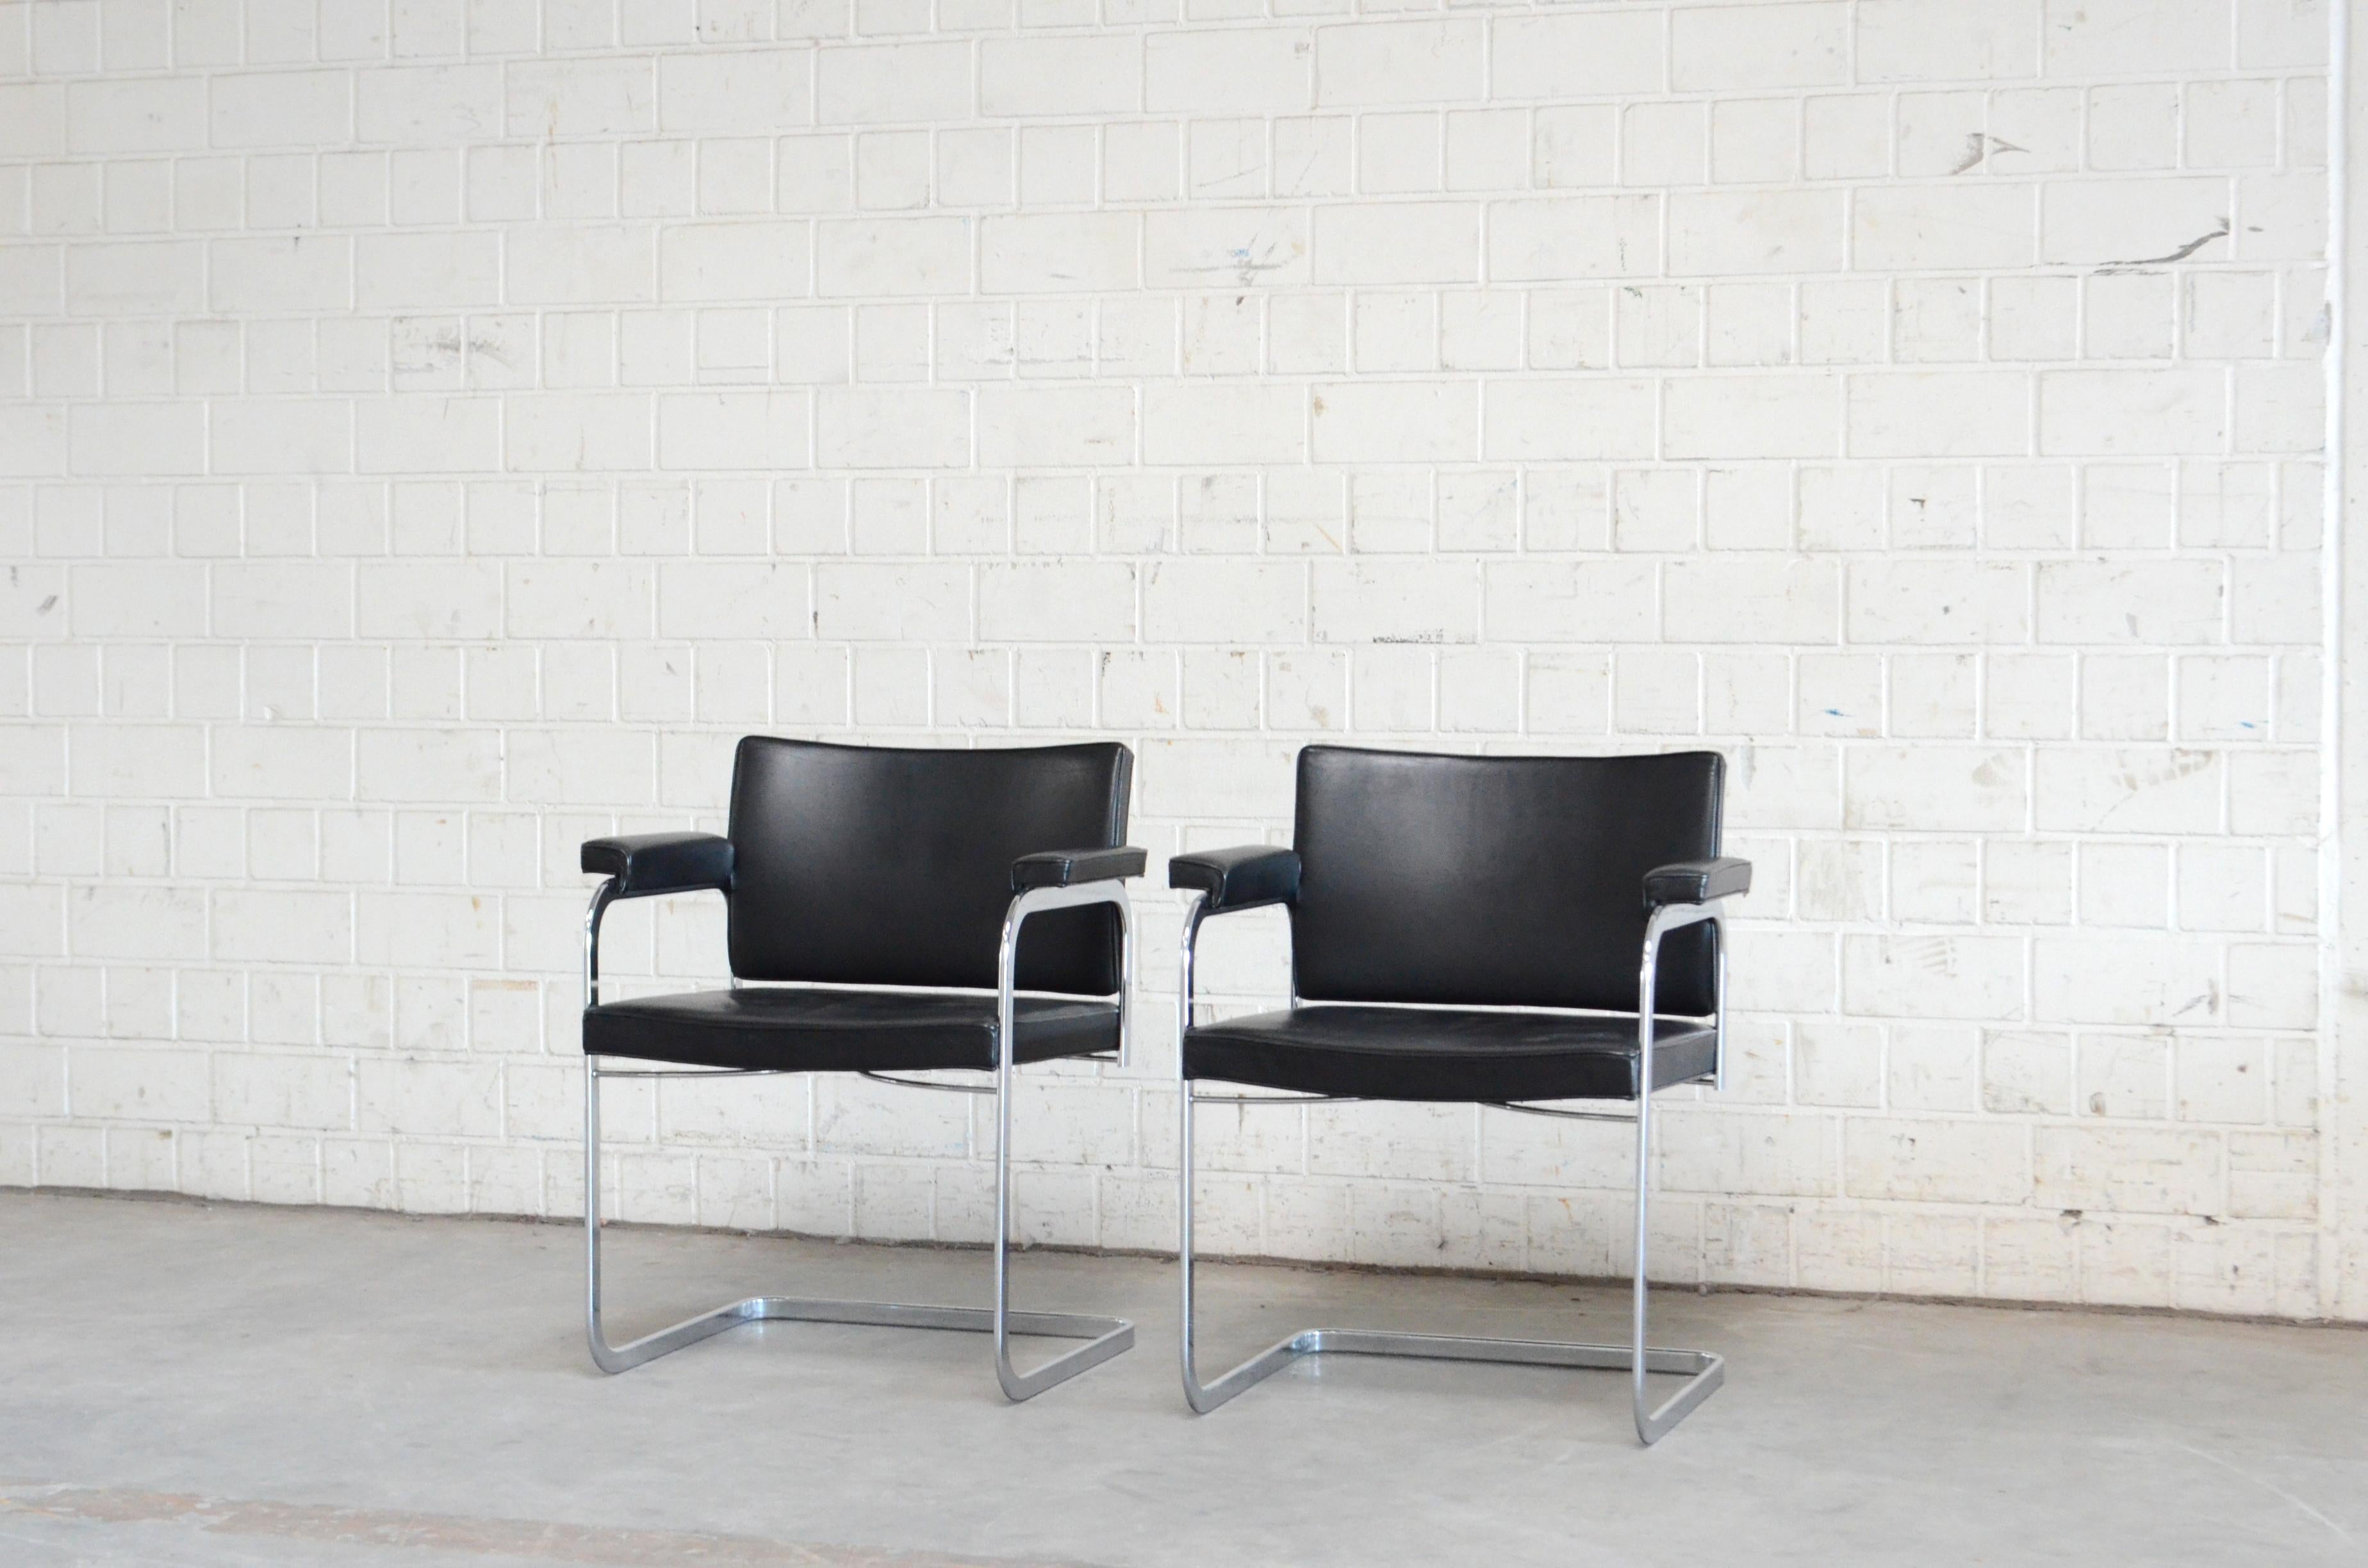 Robert Haussmann RH 305 Sesselentwurf von 1957 und hergestellt von De Sede.
Schwarzes Semi-Anilin-Leder und ein verchromtes Stahlgestell.
Dies ist ein klassischer Schweizer Designstuhl.
Toller Zustand.
Preis für 1 Stuhl
Wir haben 2 Stühle auf